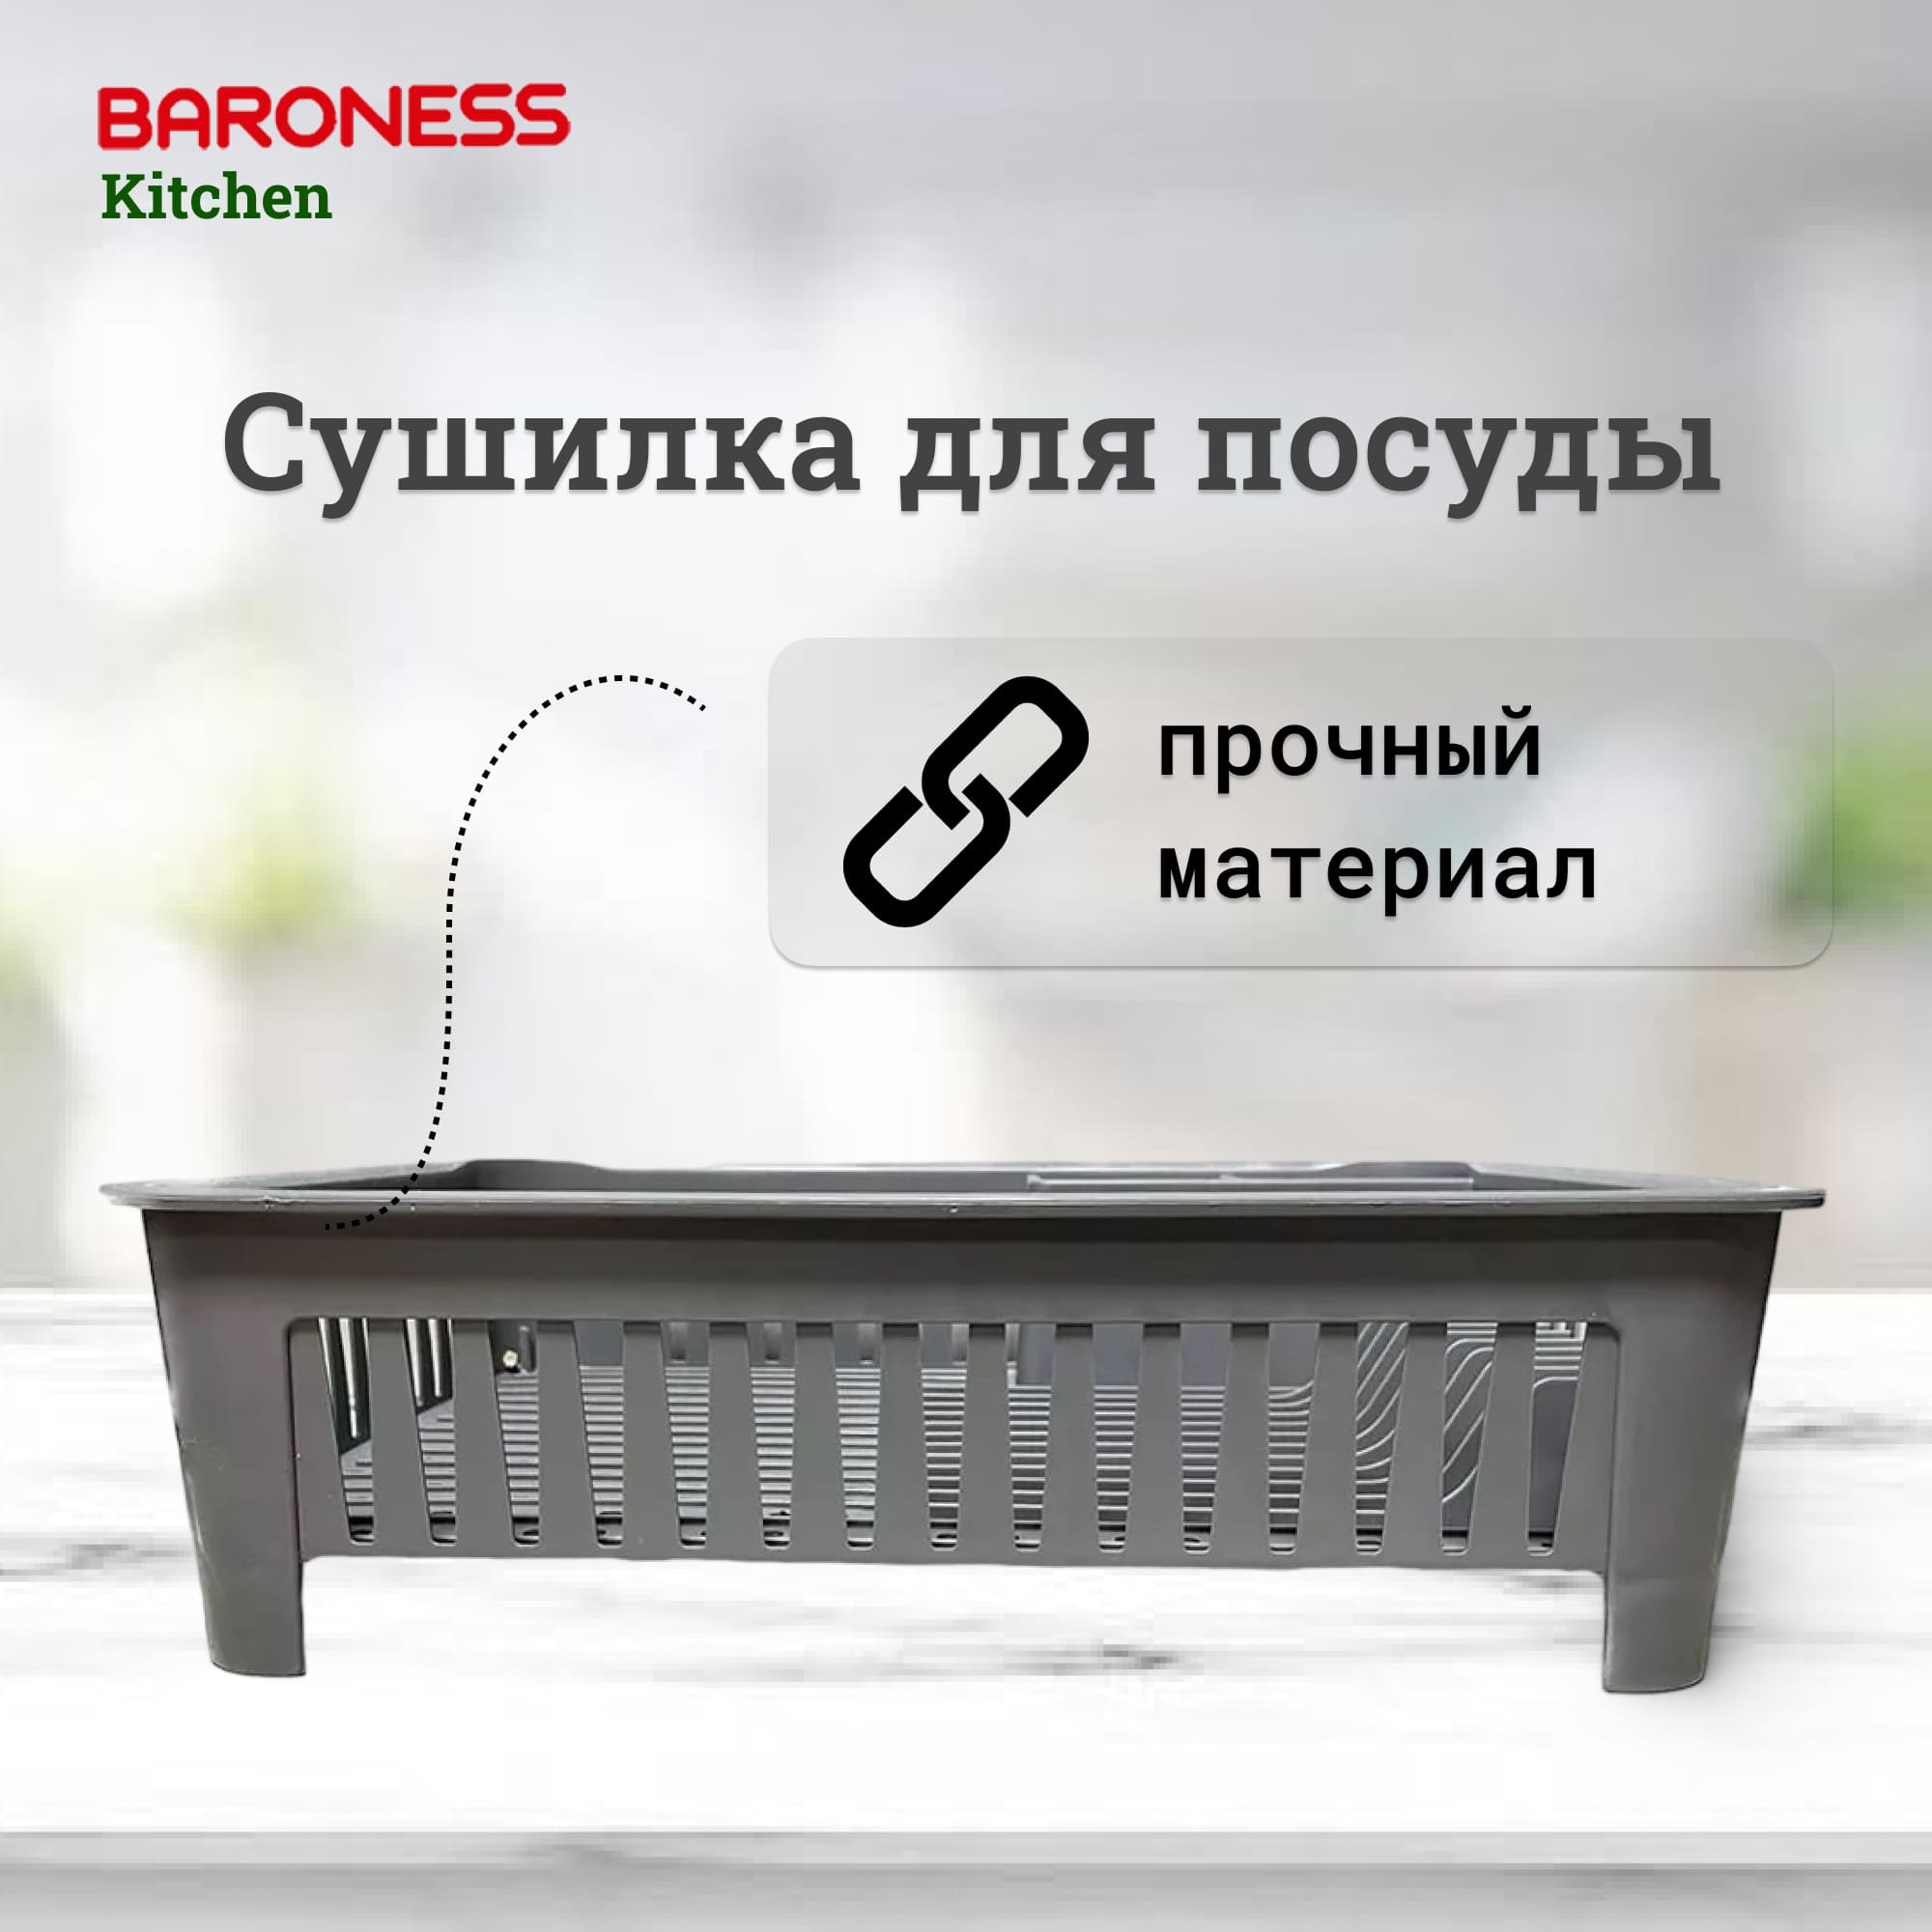 Сушилка для посуды Baroness Home 42x33 см в ассортименте сушилка для посуды ad trend 37x32x13 см в ассортименте